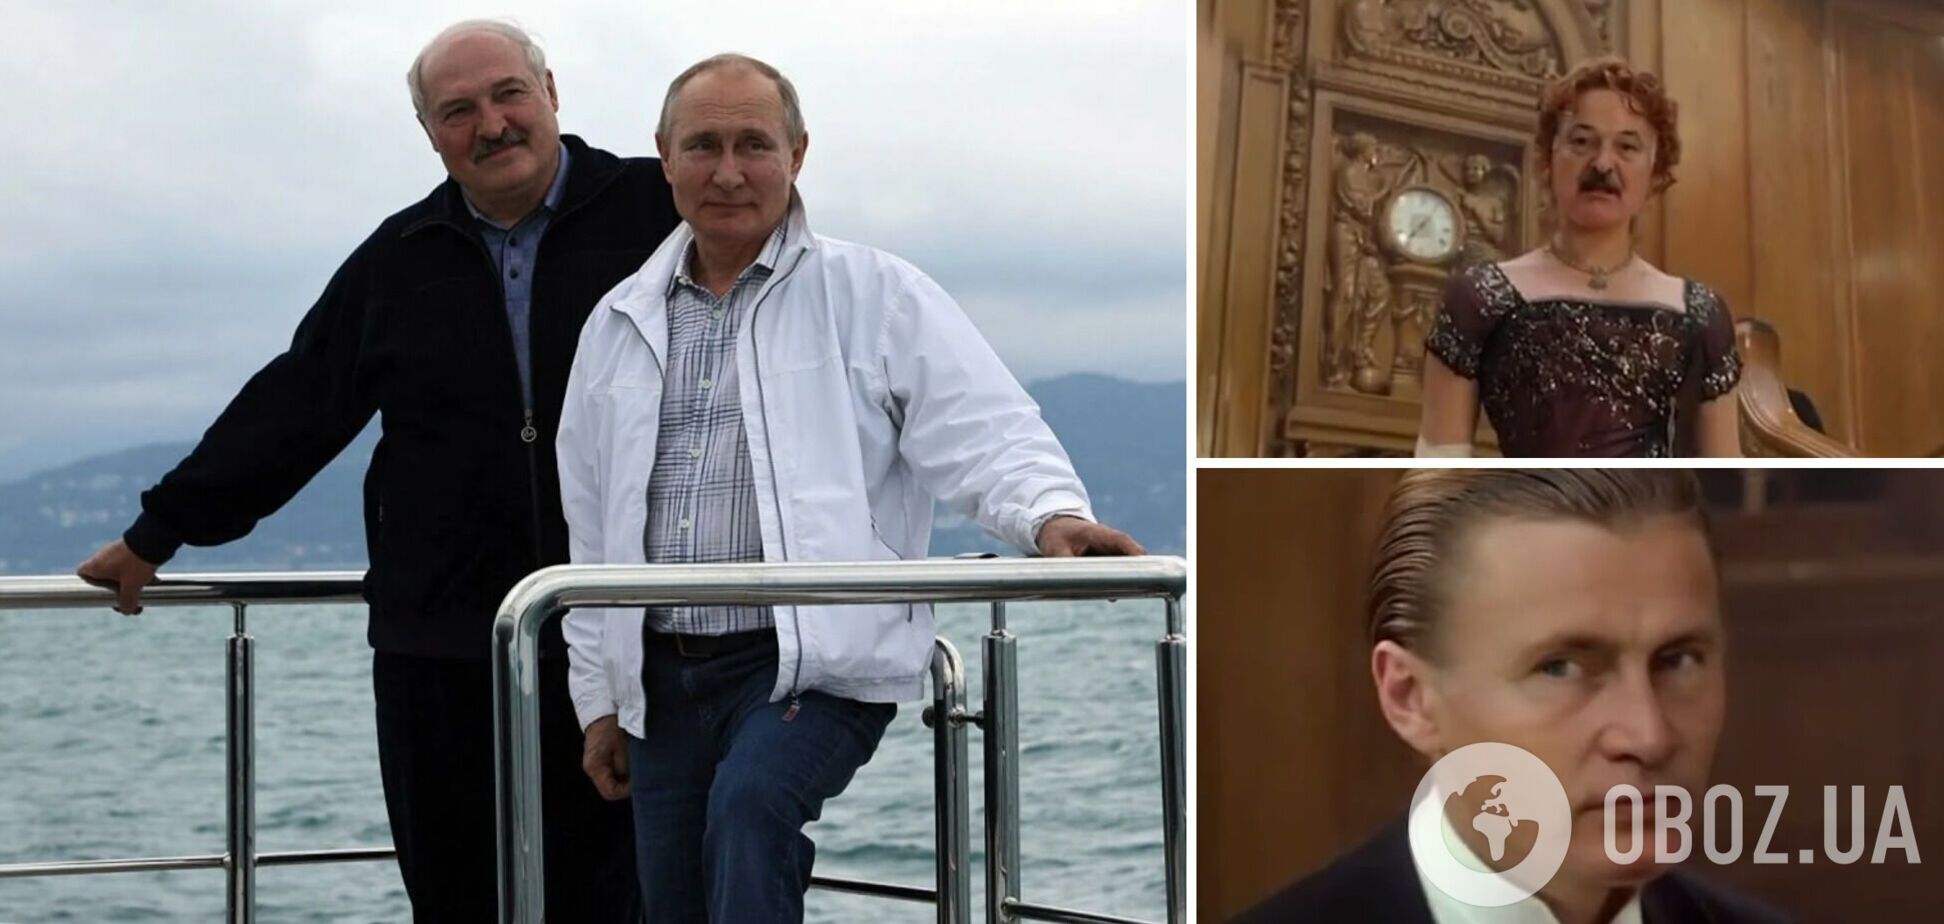 Путину и Лукашенко приготовиться. В сети показали 'секретные кадры' с крейсера 'Москва' перед затоплением